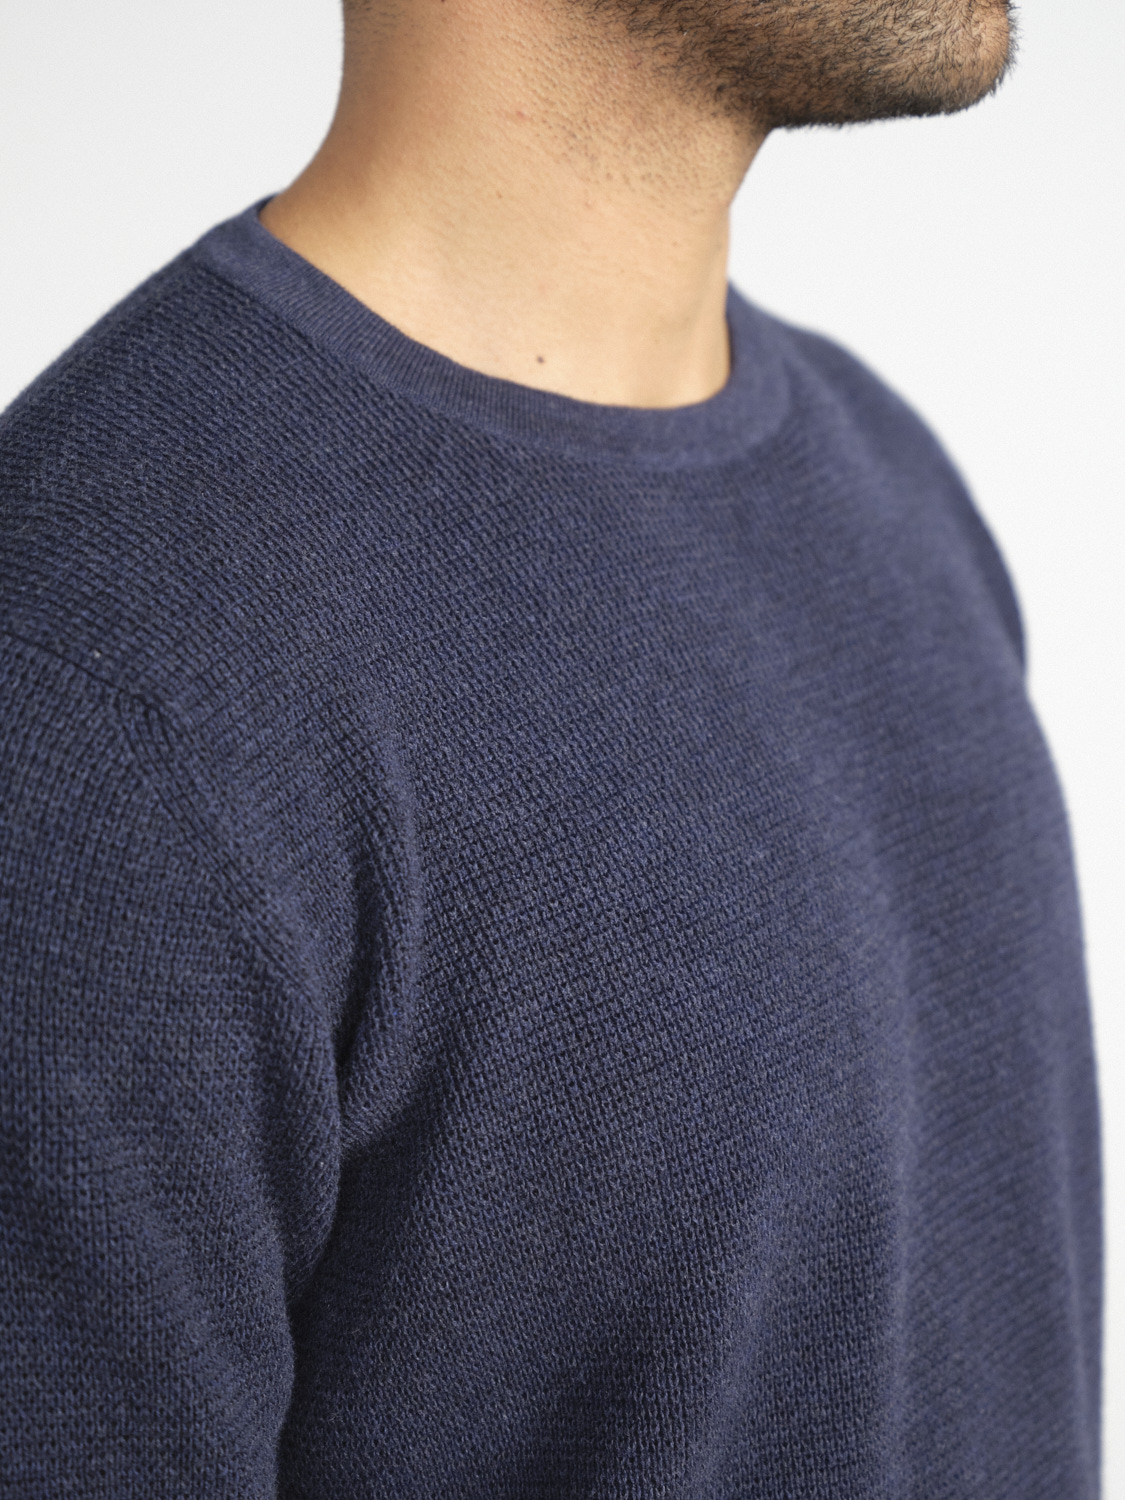 Iris von Arnim Primo – cotton sweater  marine M